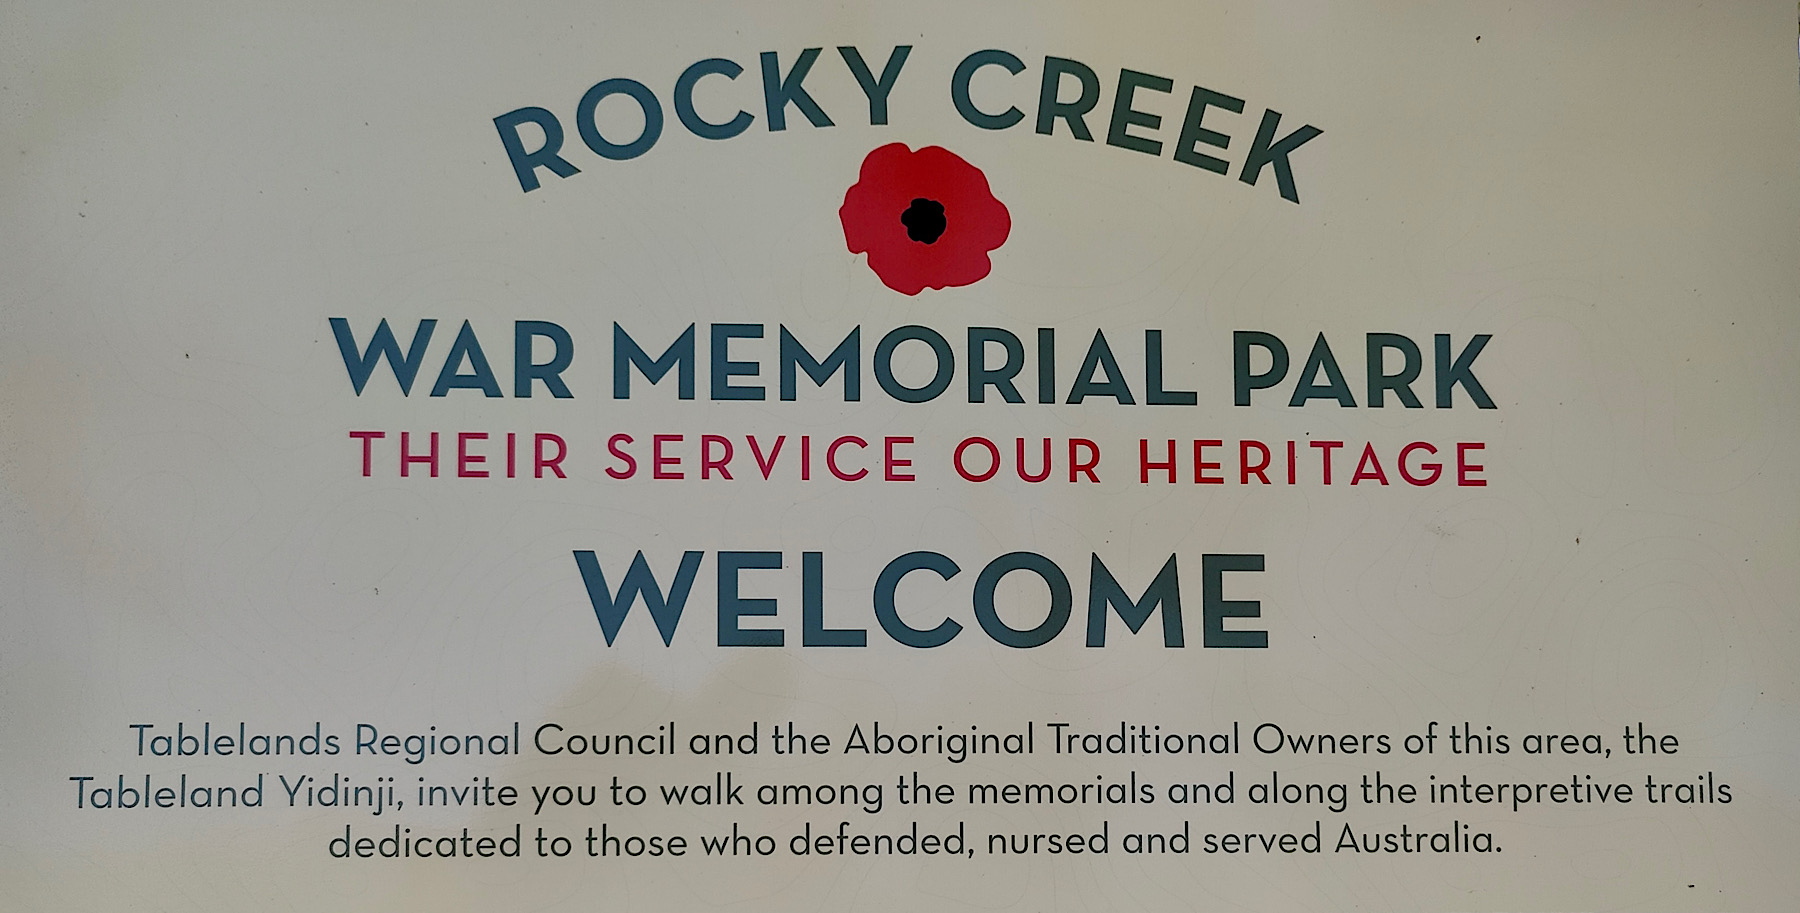 Rocky Creek War Memorial